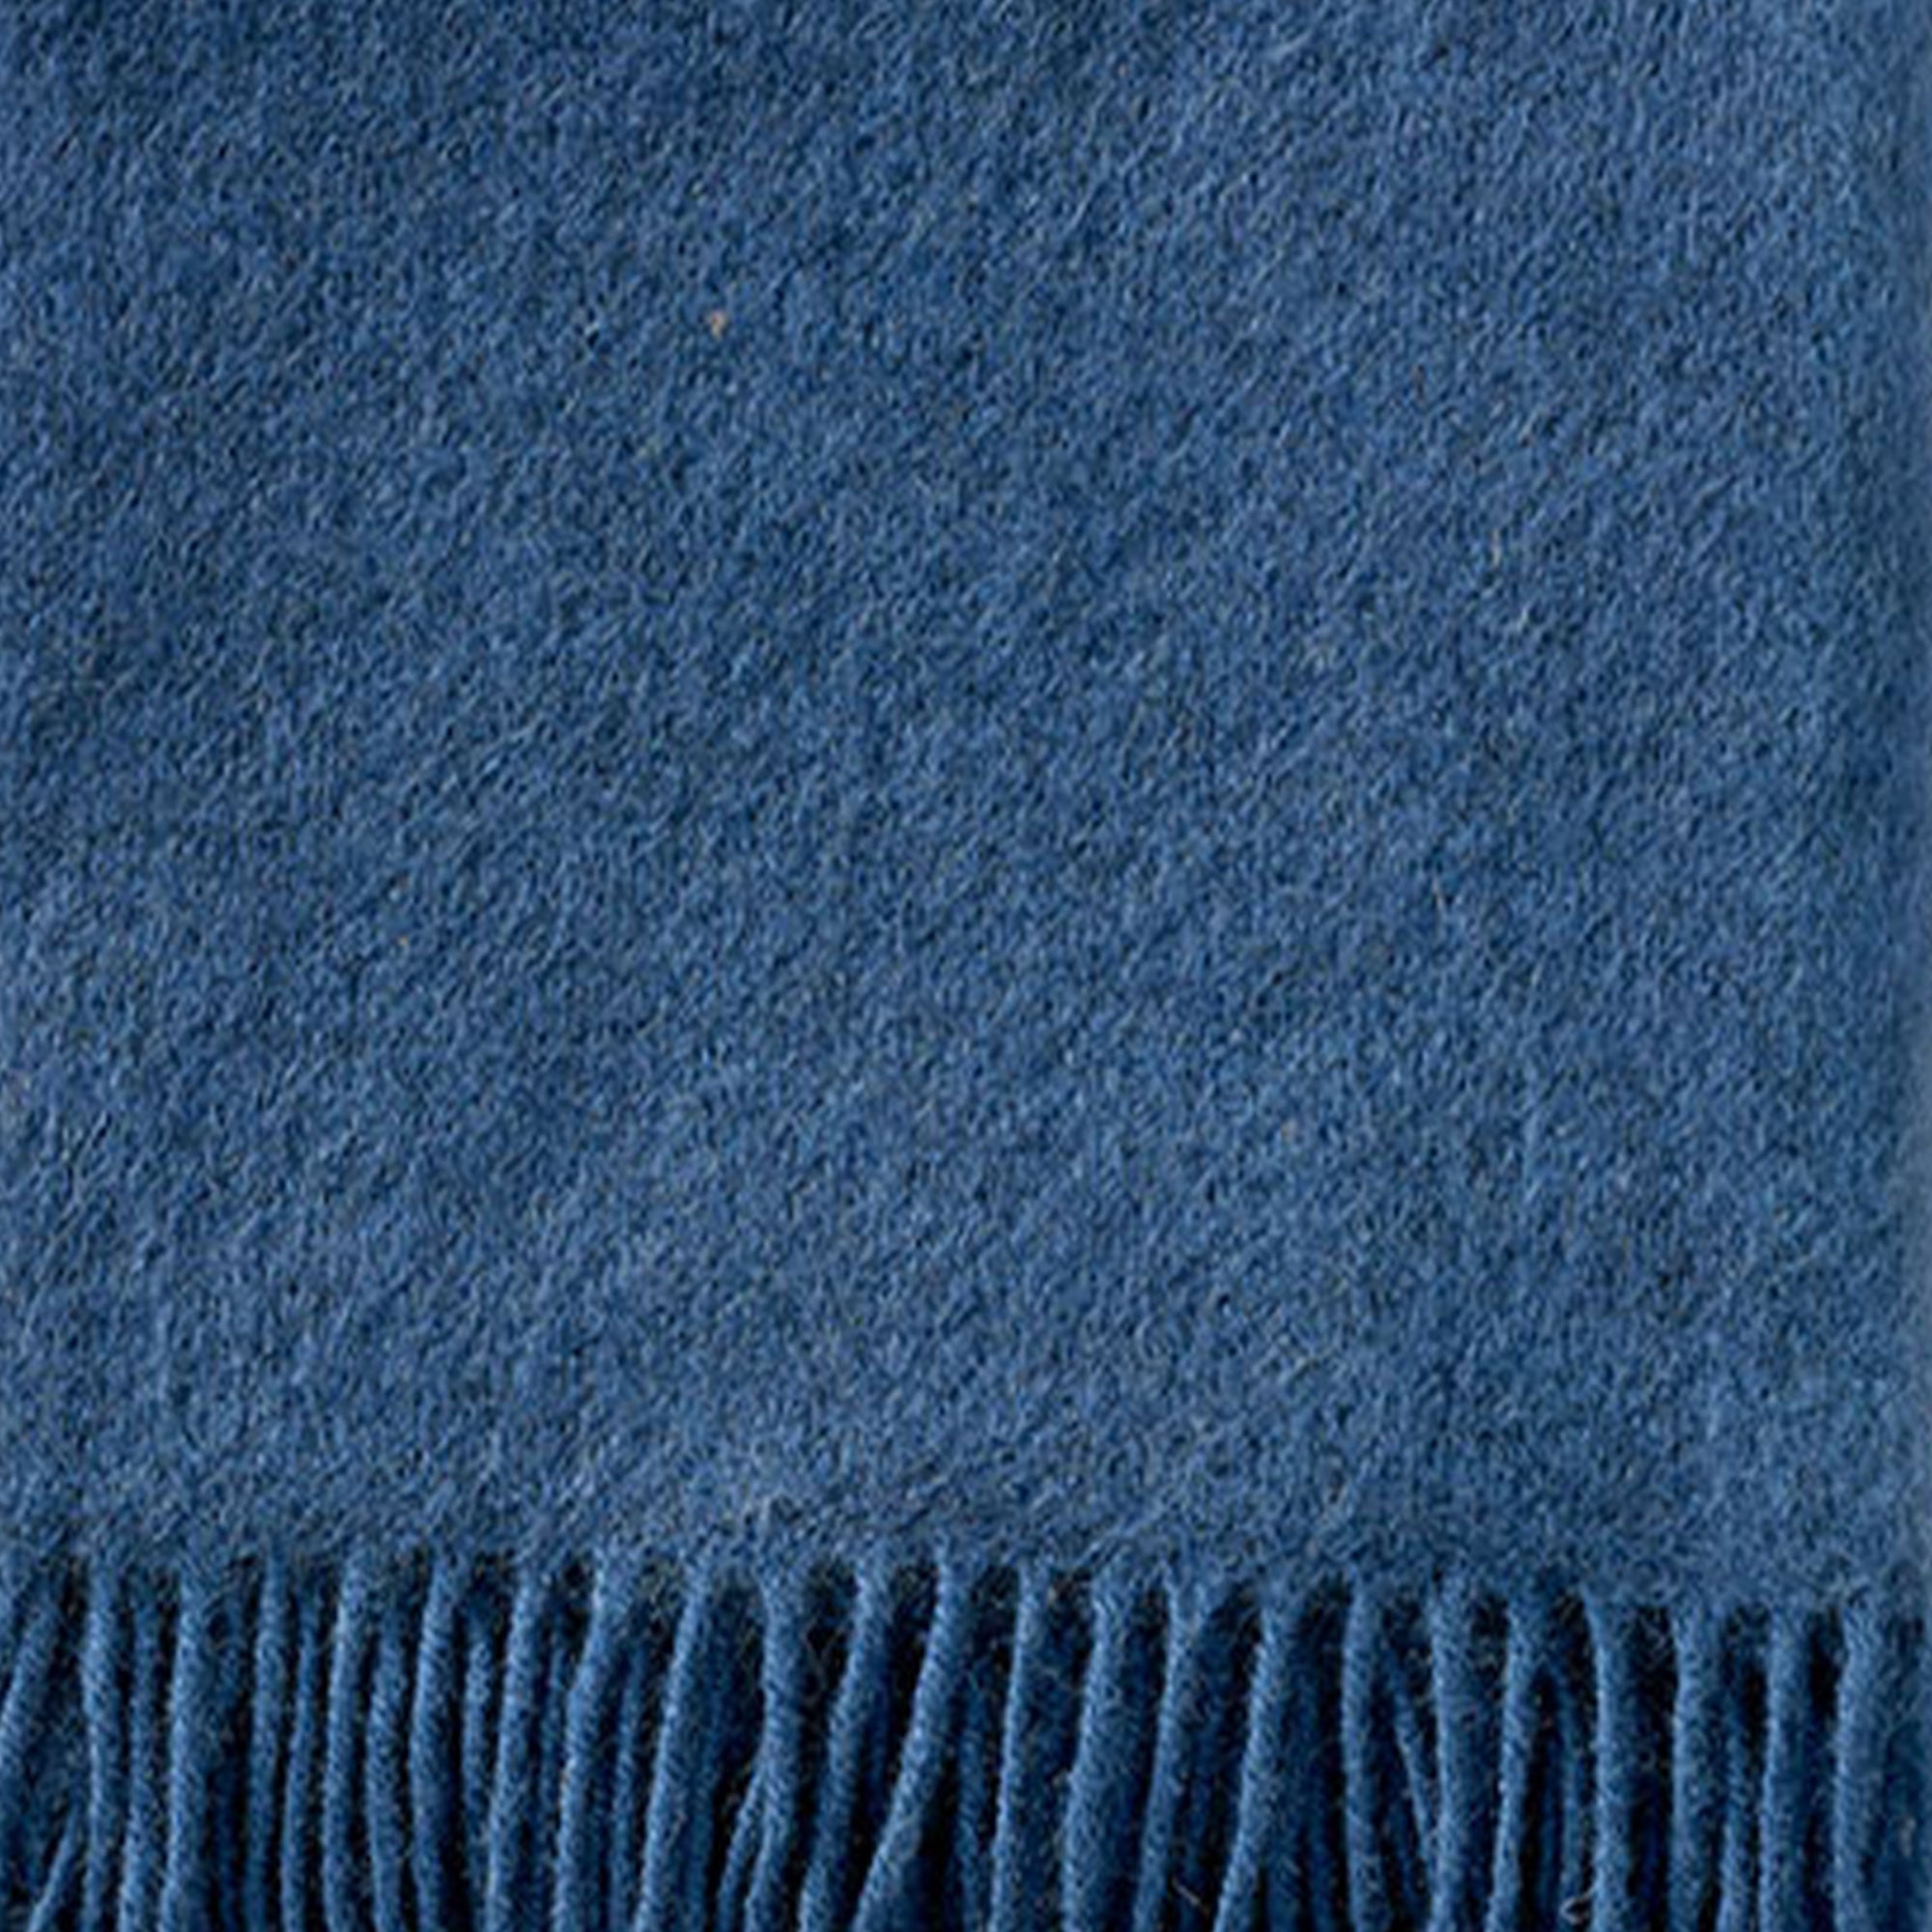 Gotland Sea Blue 130x200cm Brushed Wool Throw